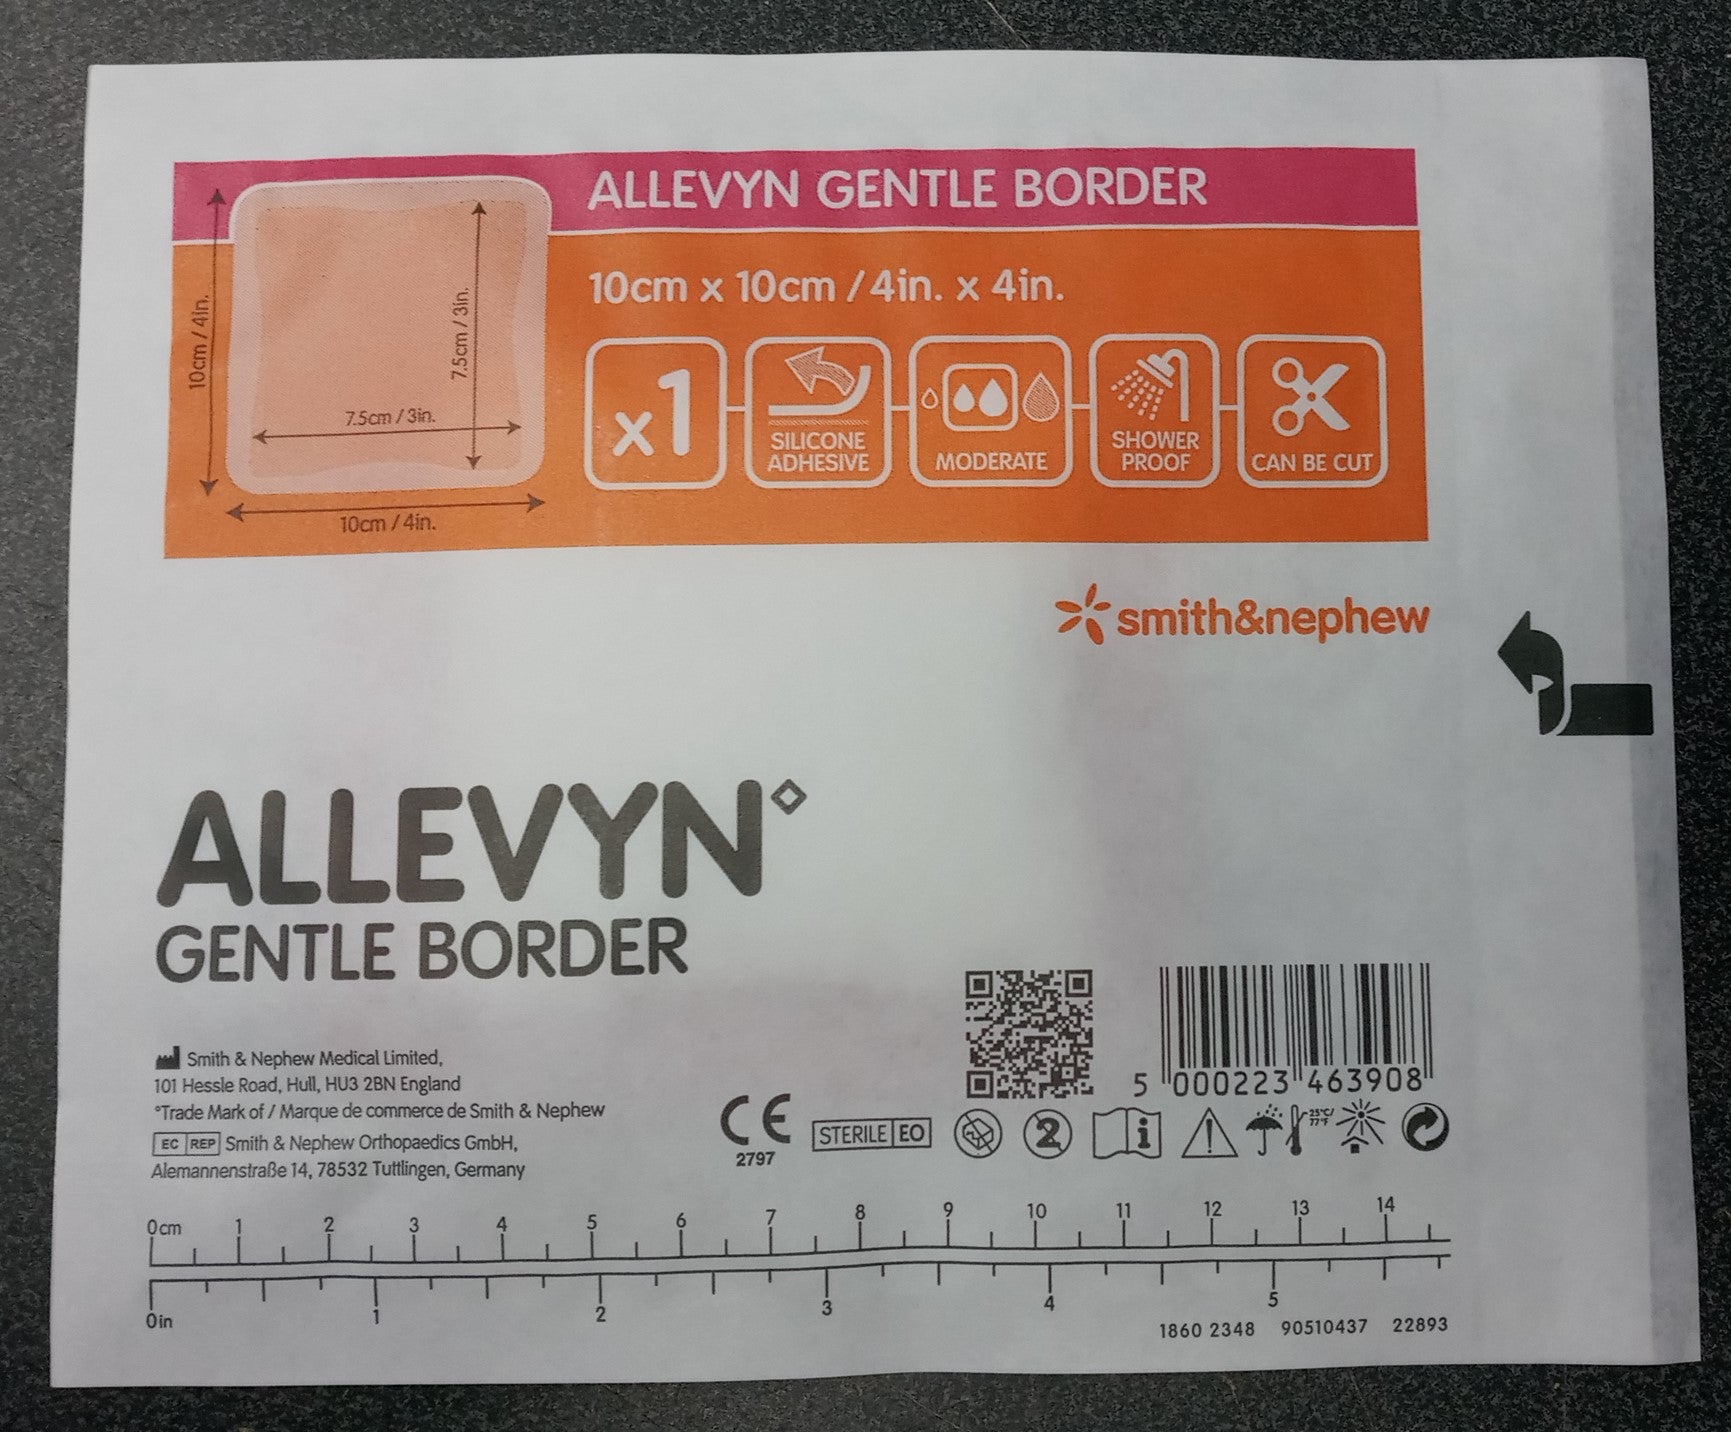 Allevyn Gentle Border 66800270 Silicone Gel Adhesive Foam Dressing (3pk of 10pc)